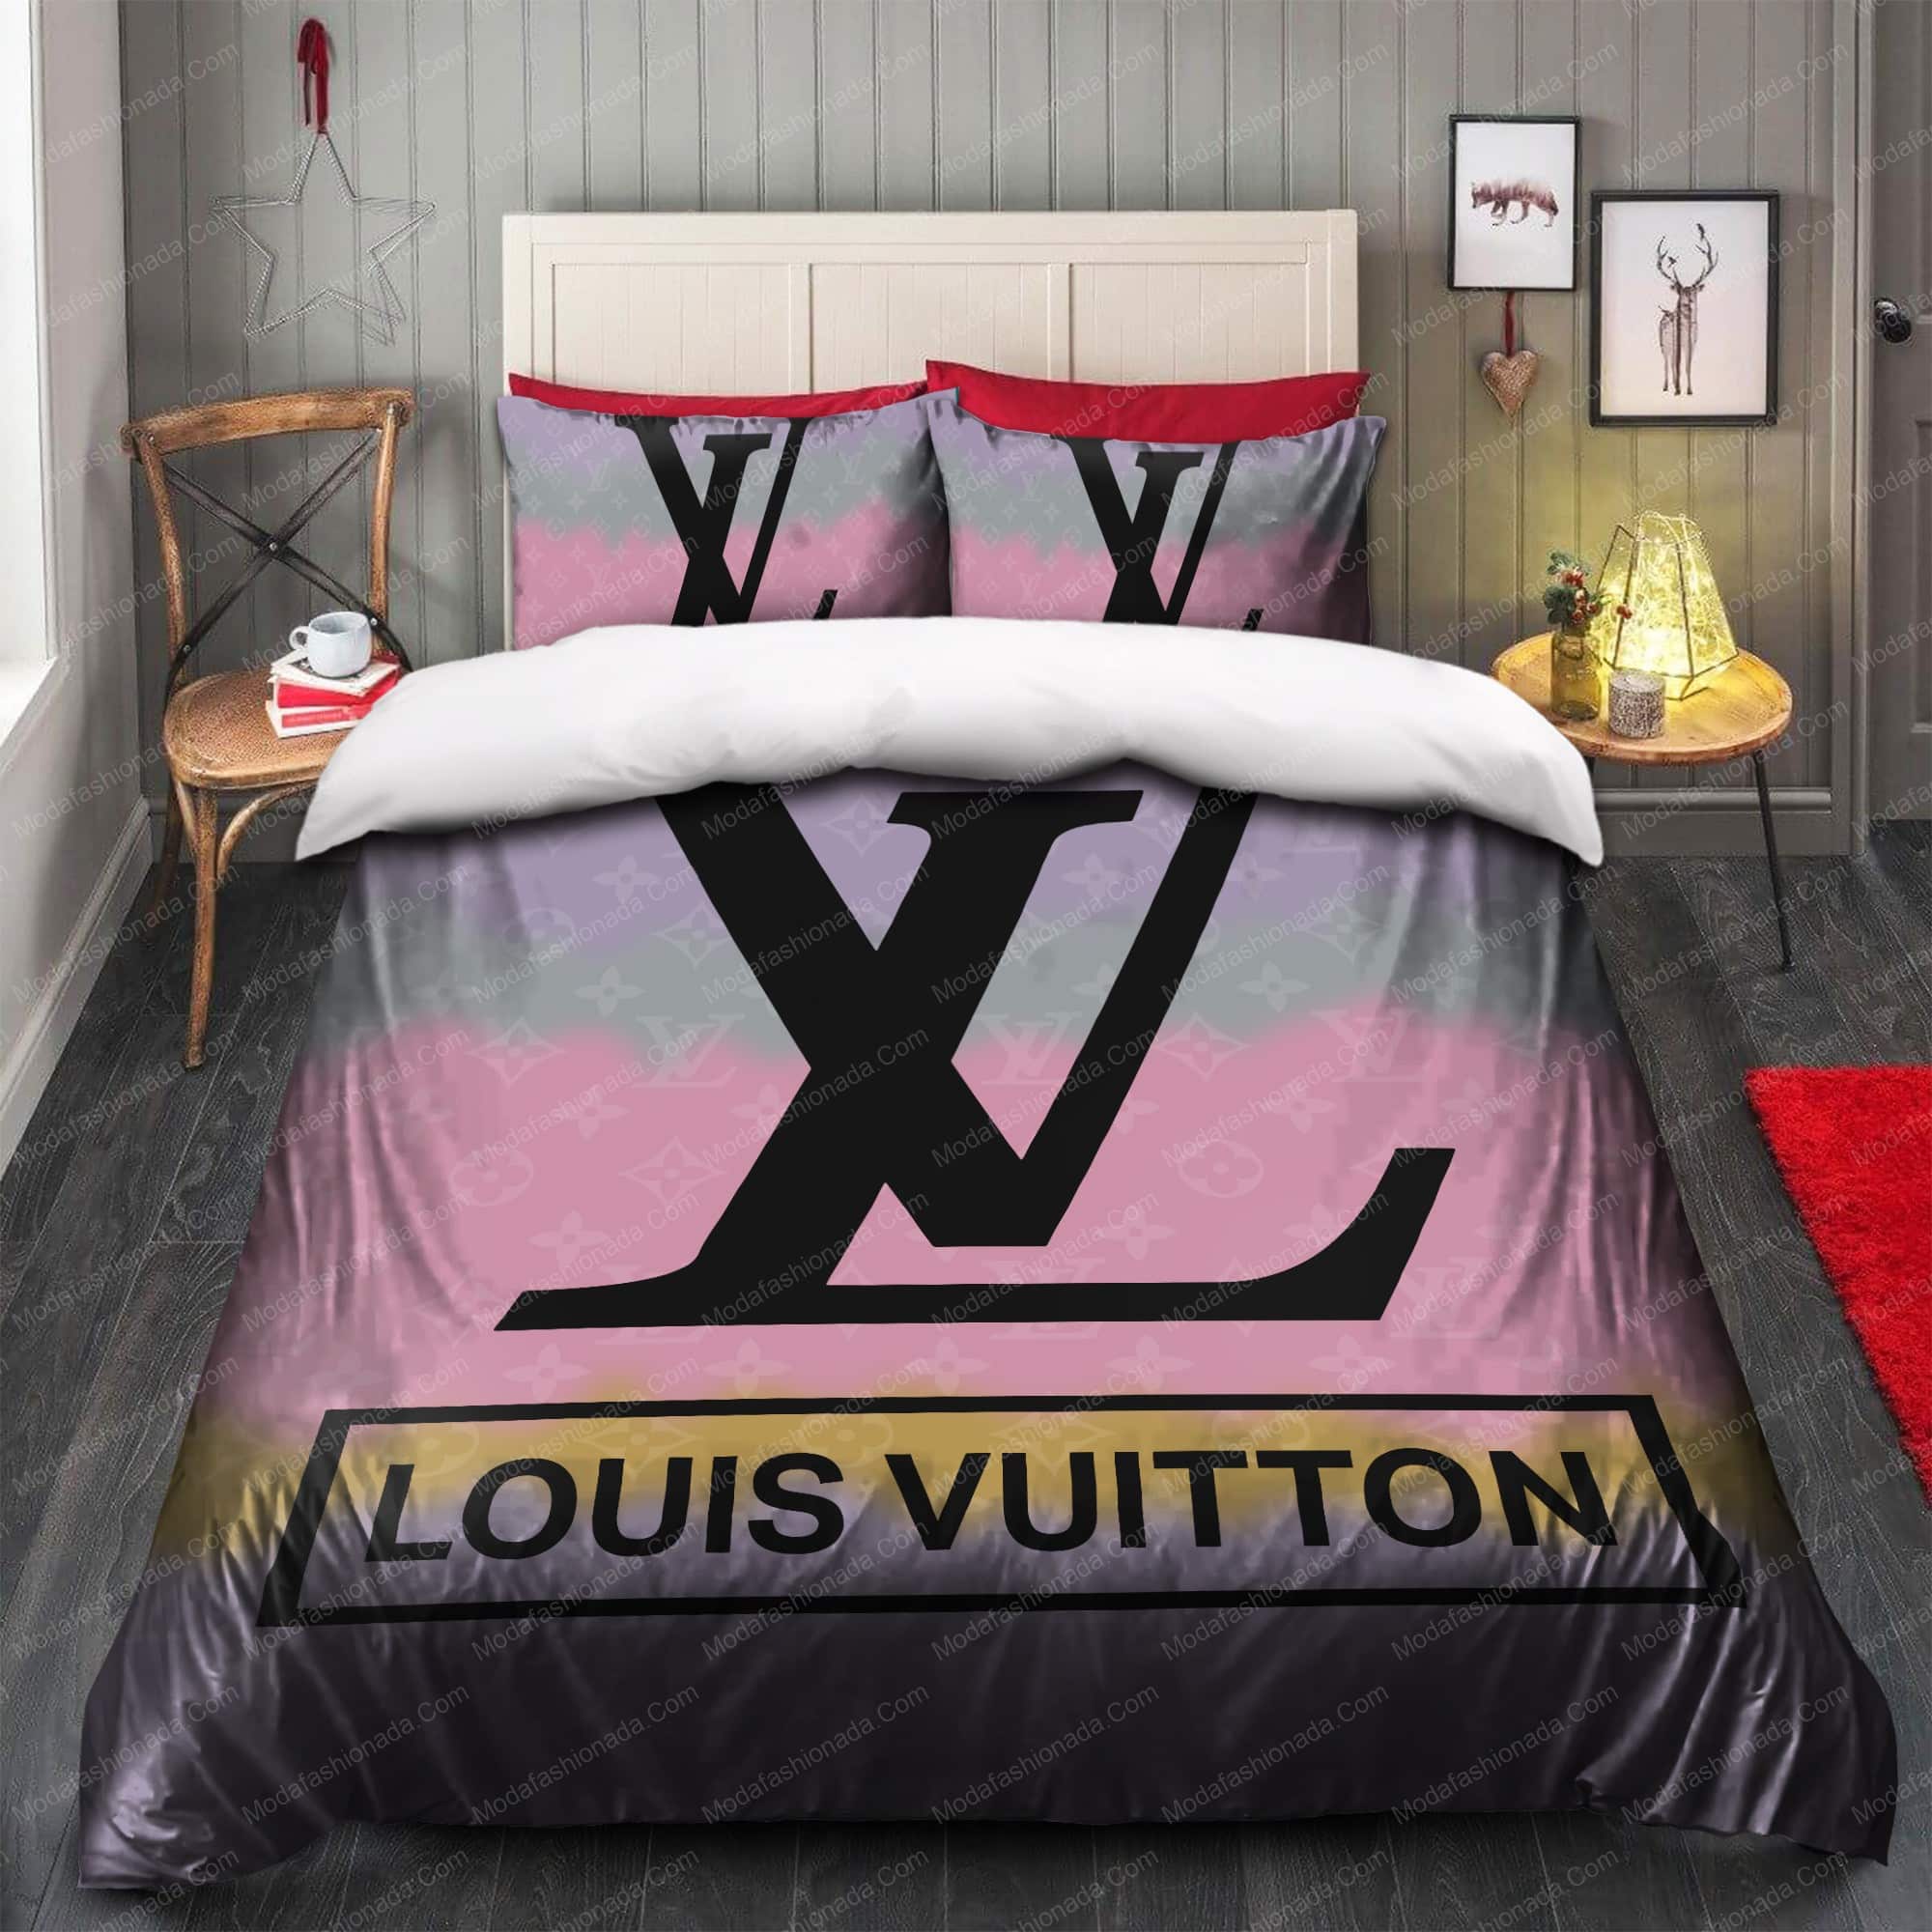 Louis Vuitton Luxury Brands 25 Bedroom Duvet Cover Louis Vuitton